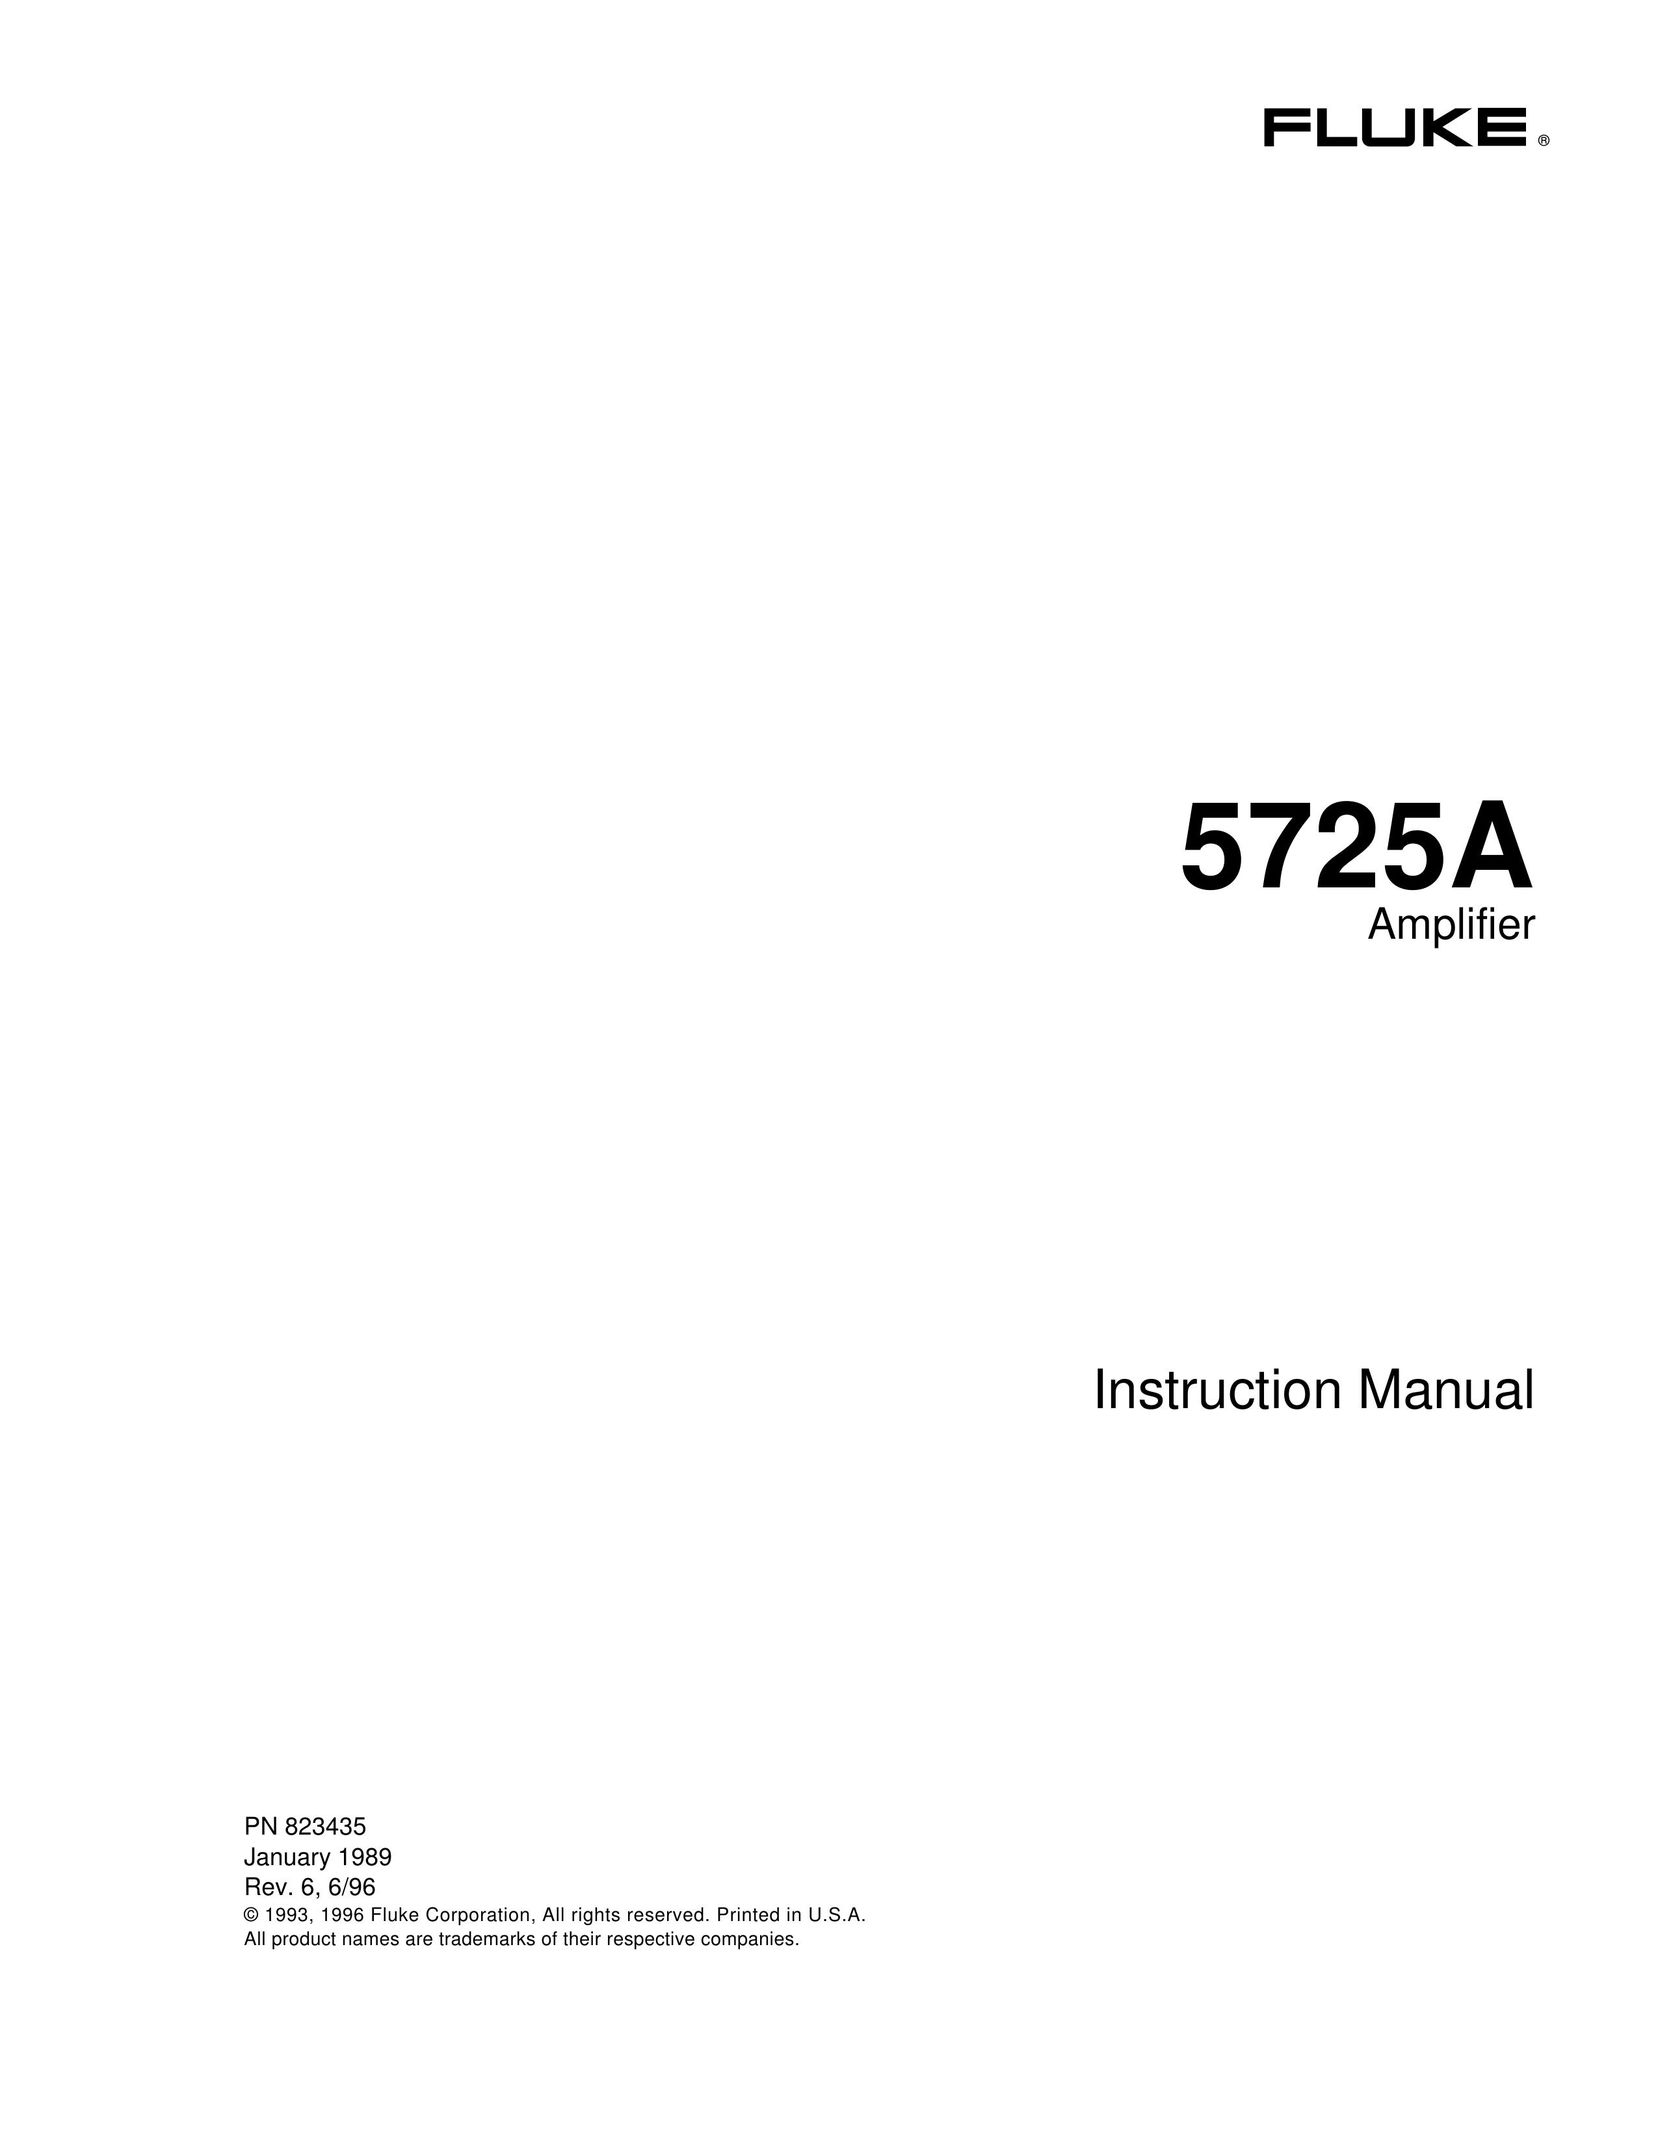 Fluke 5725A Car Amplifier User Manual